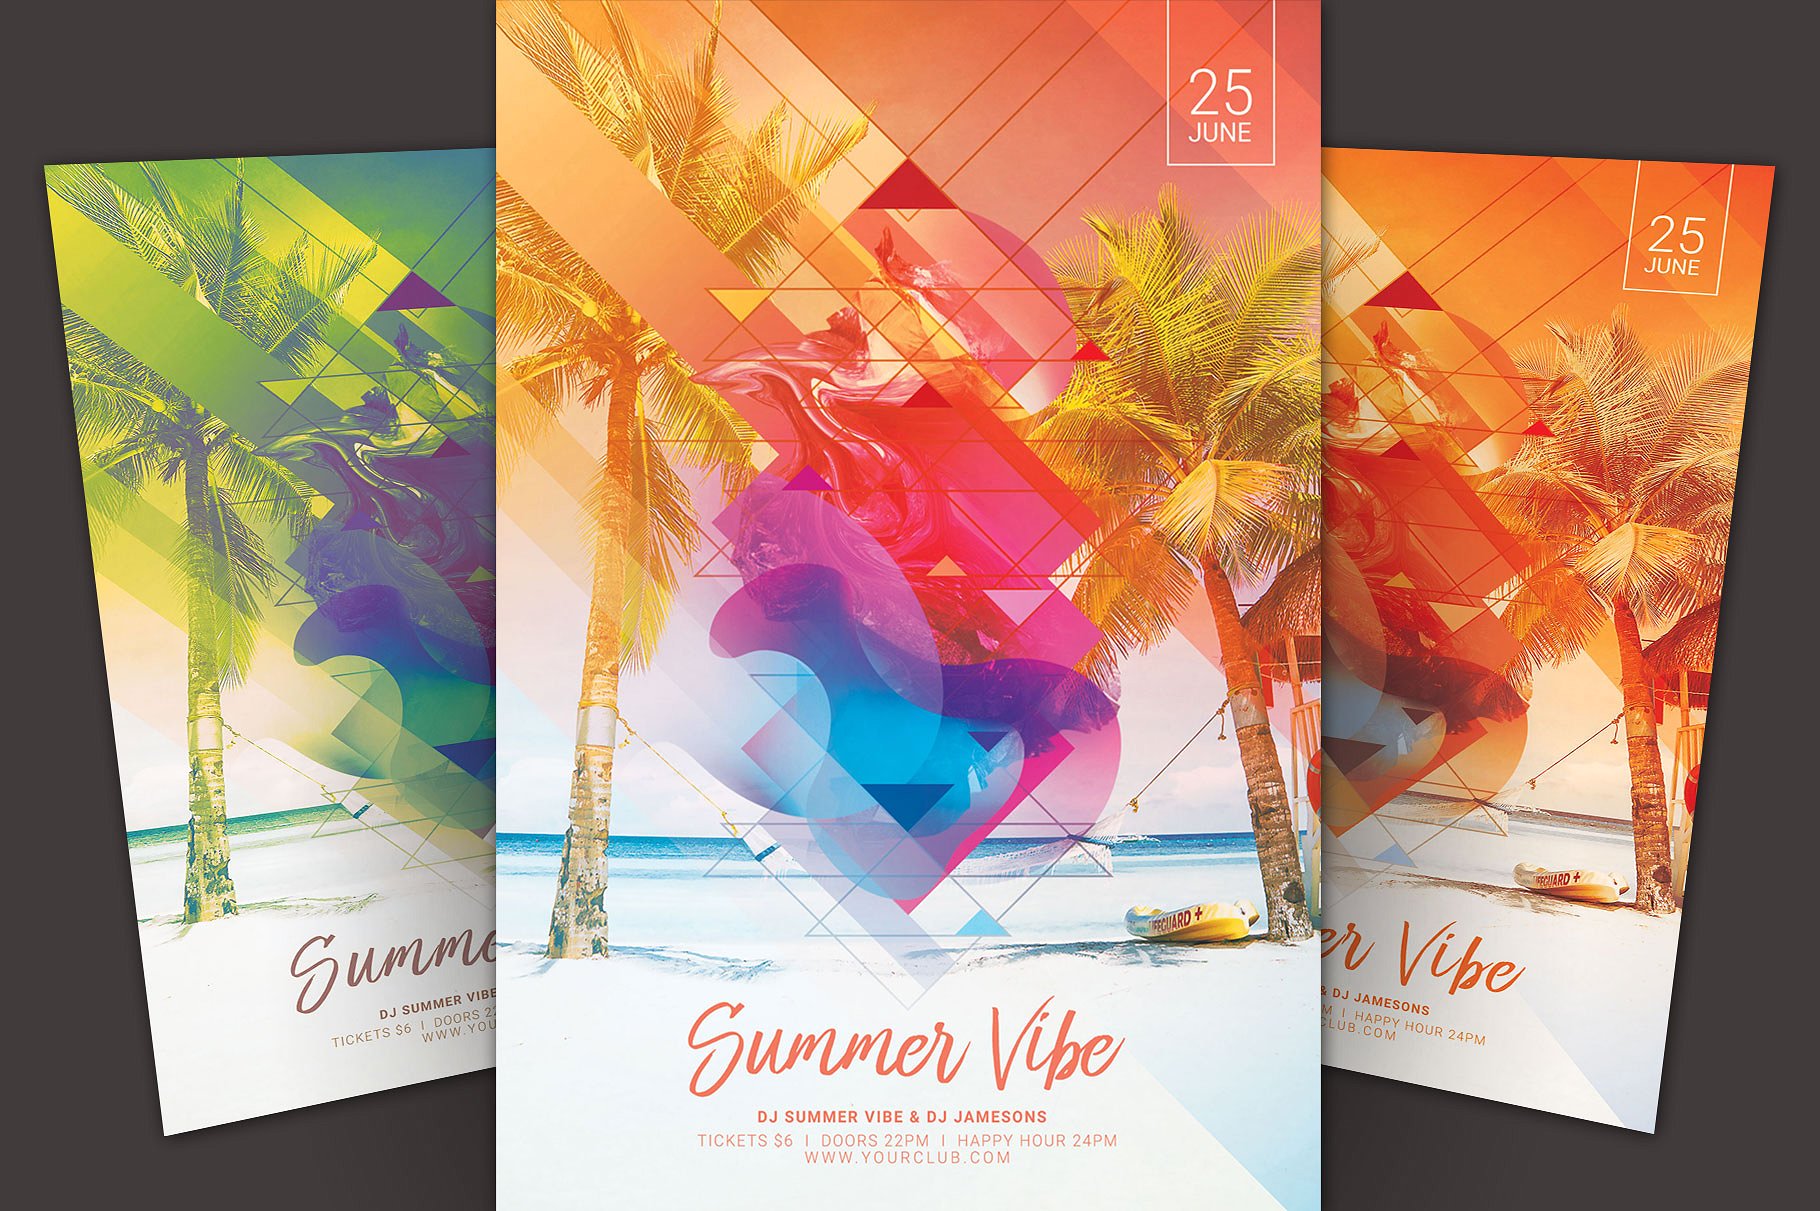 清爽夏季活动海报宣传单模板 Summer Vibe Flyer Template插图